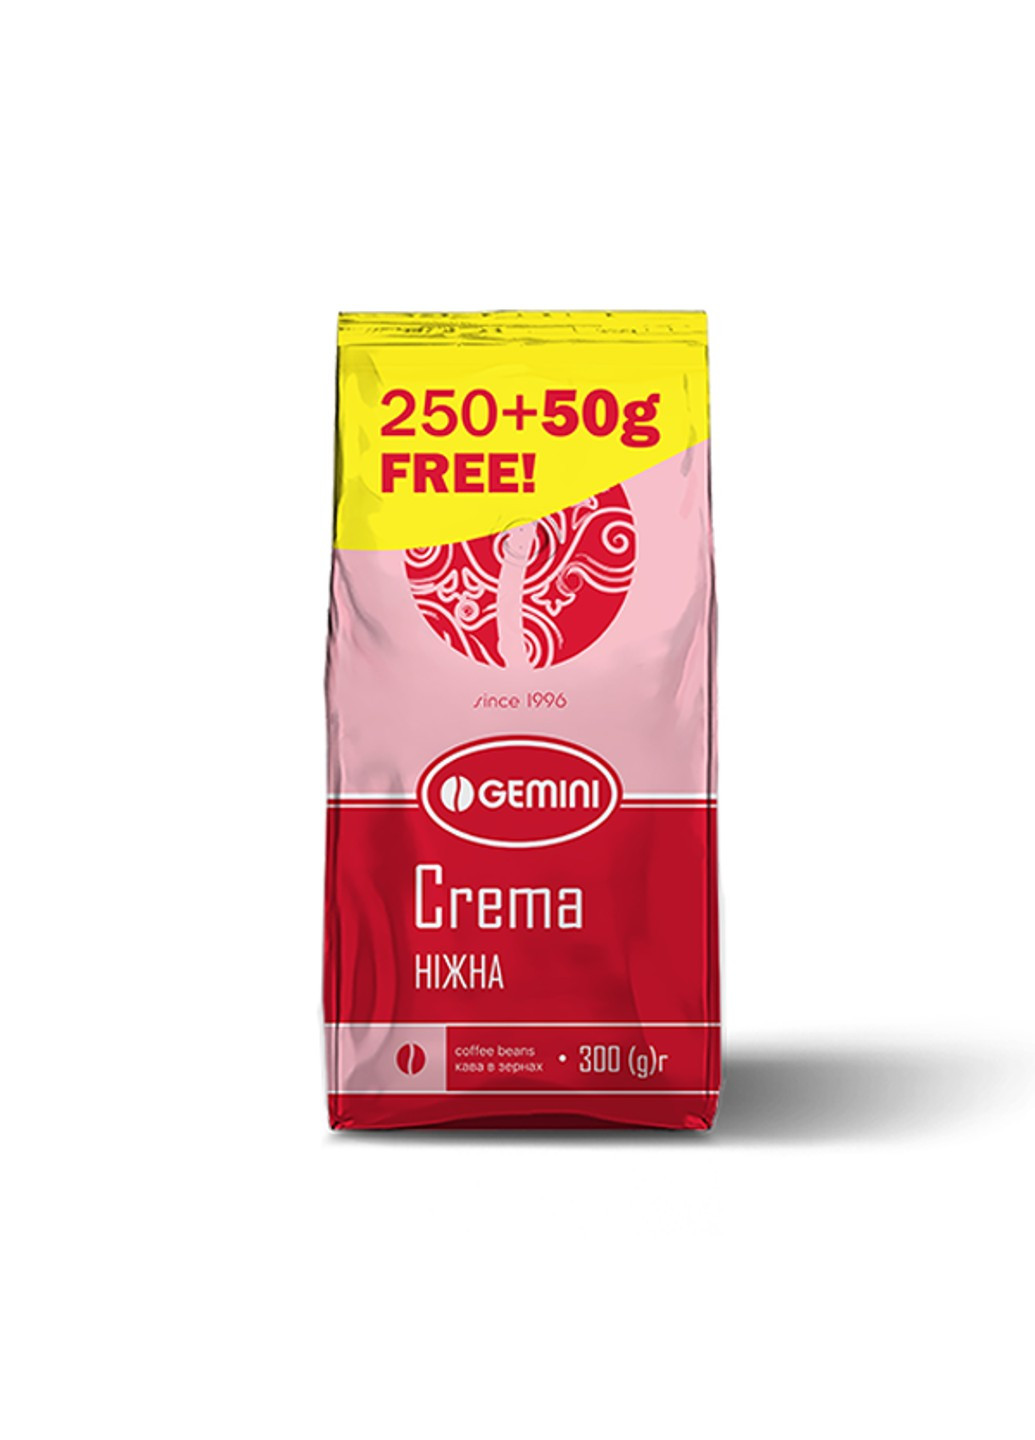 Кофе Crema в Зернах 300 г Gemini (253918692)